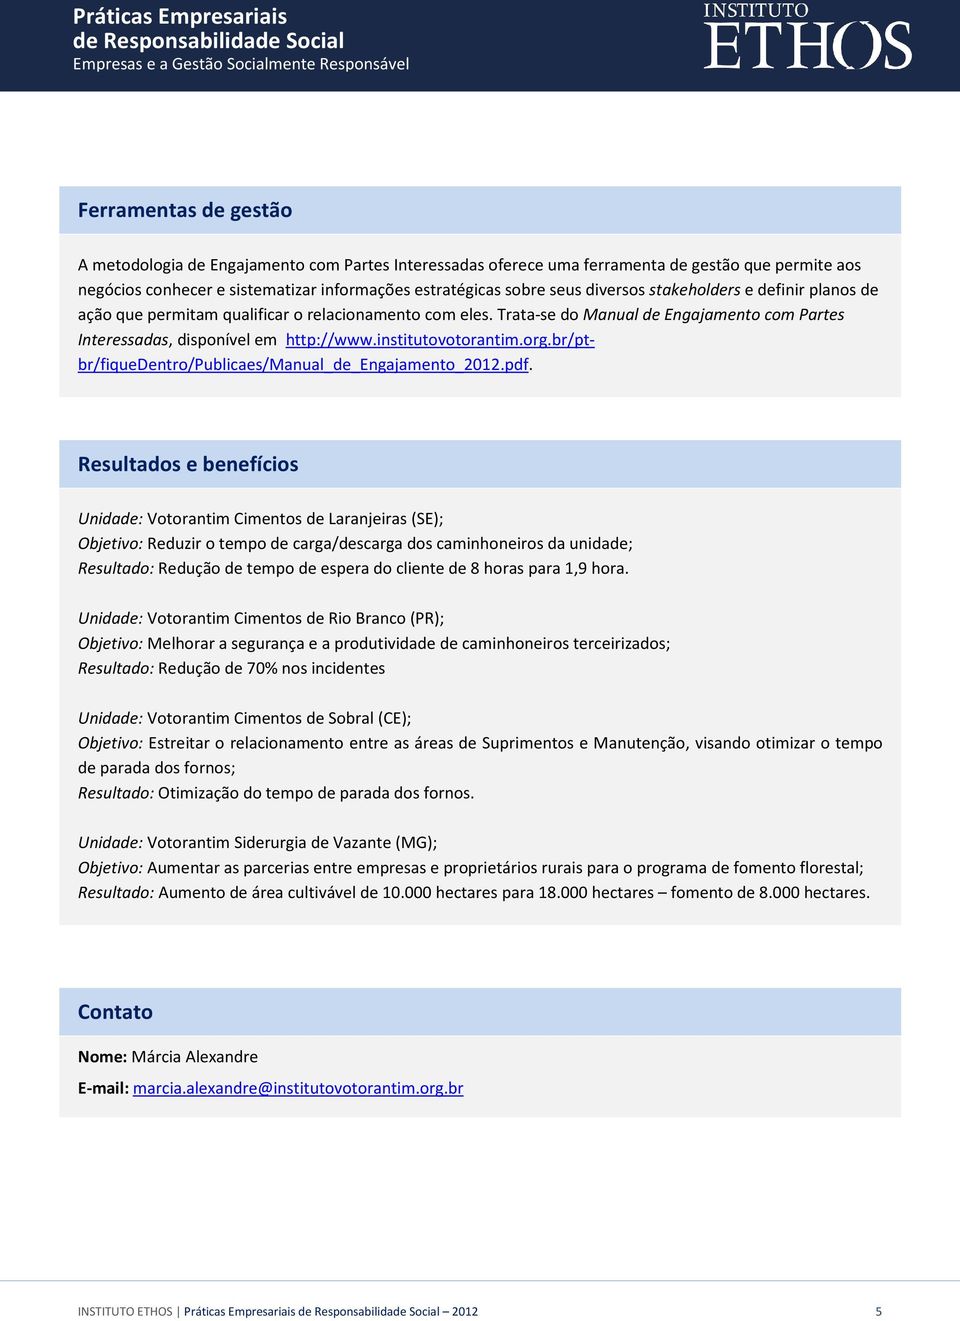 institutovotorantim.org.br/ptbr/fiquedentro/publicaes/manual_de_engajamento_2012.pdf.